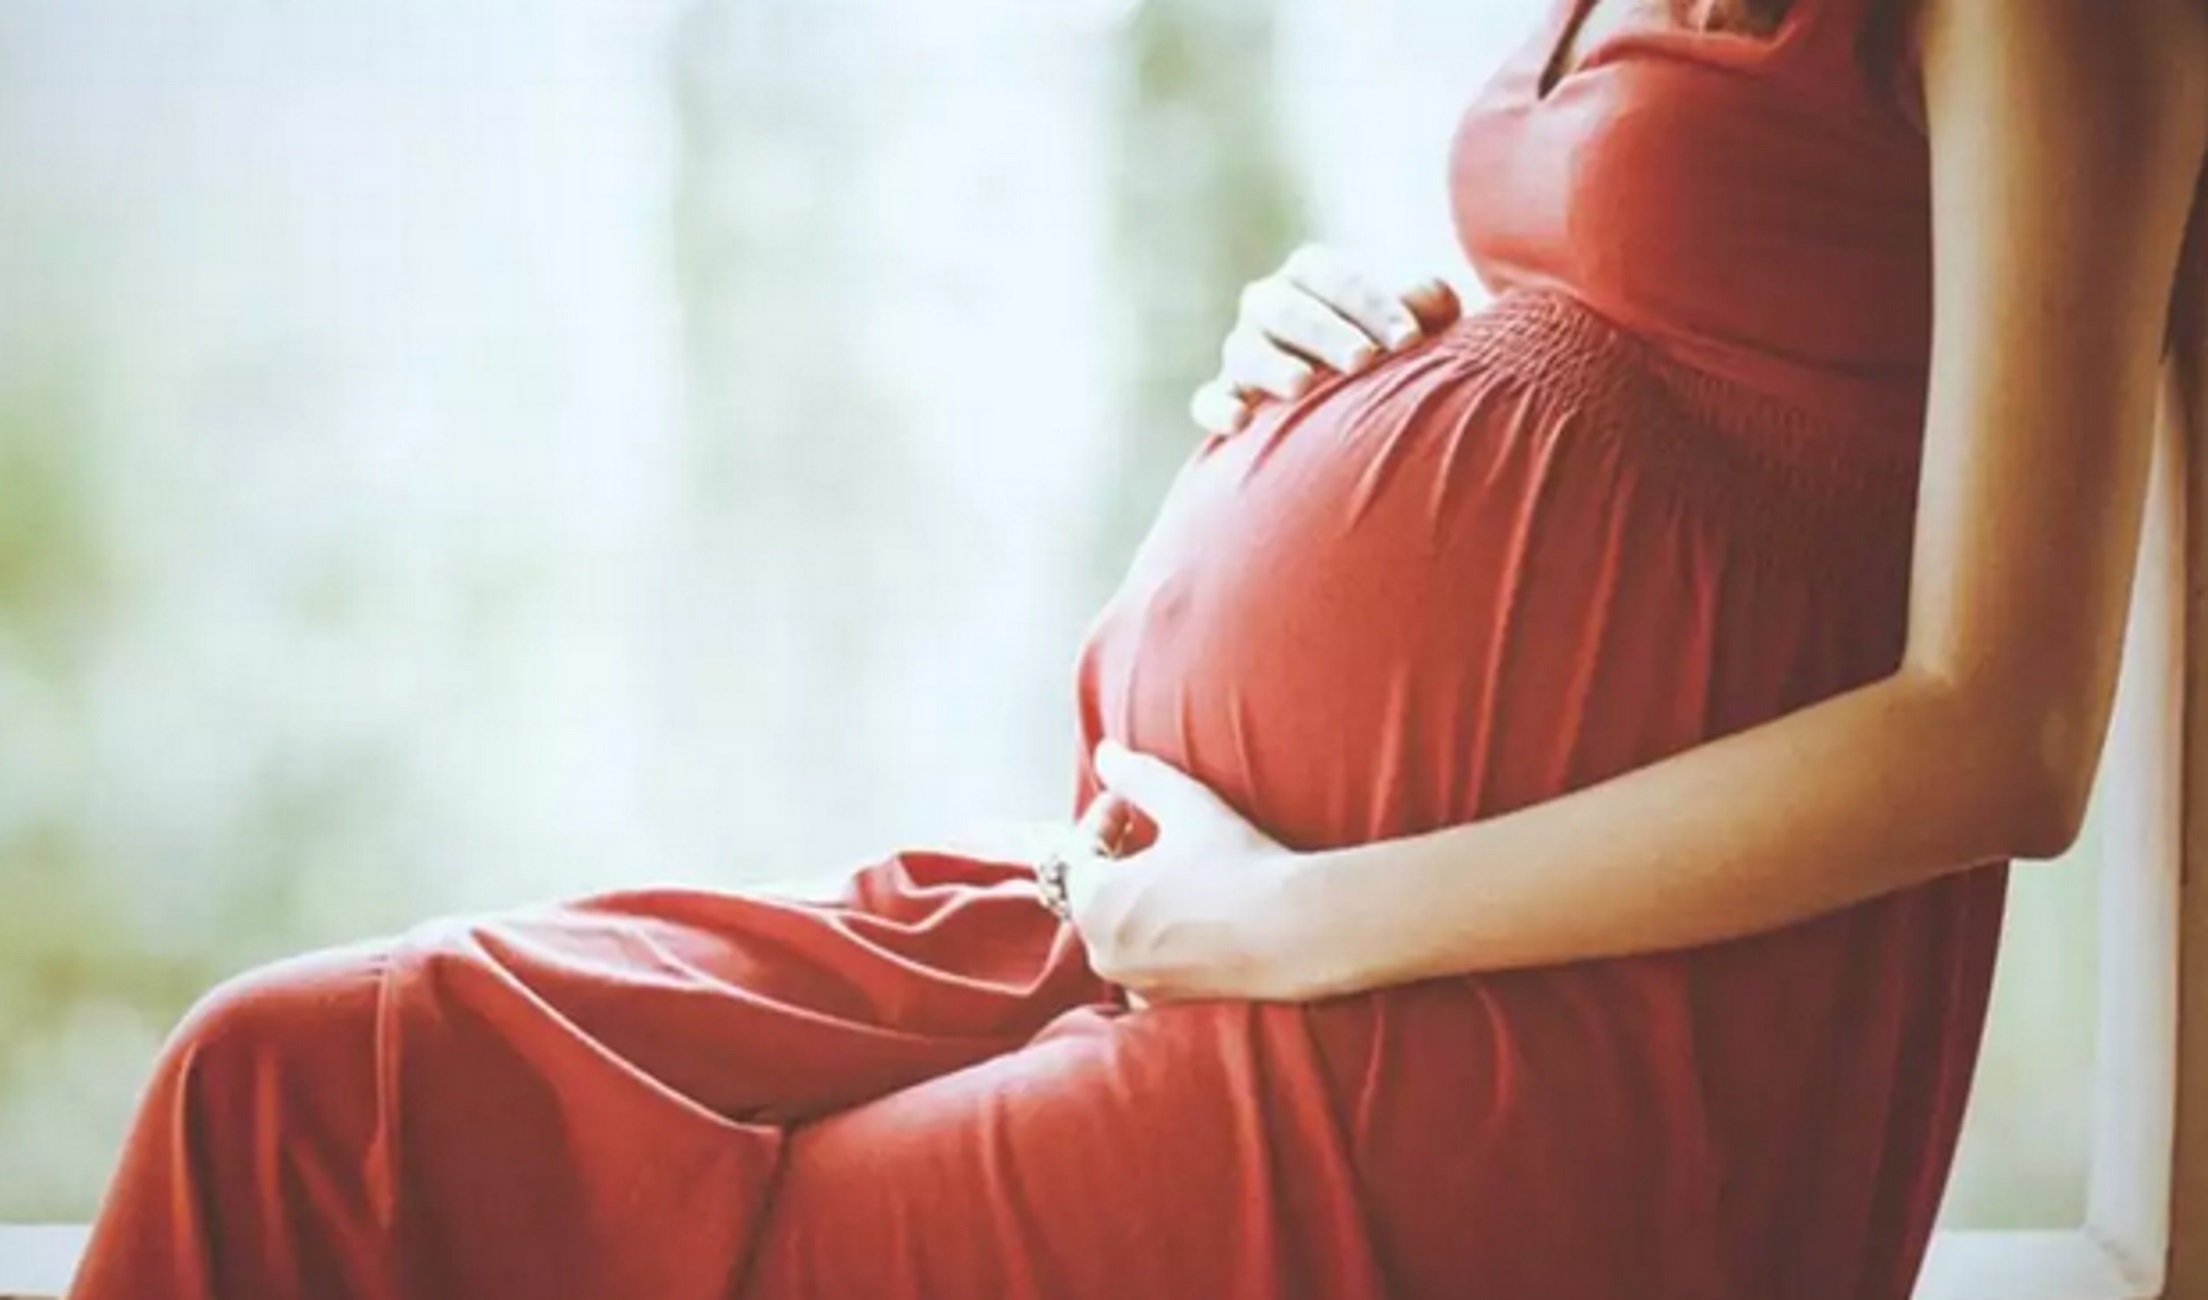 Κορονοϊός: Νόσησε ο σύζυγος της εγκύου που διαγνώστηκε θετική στην Κρήτη! Αγωνία για 6 ασθενείς